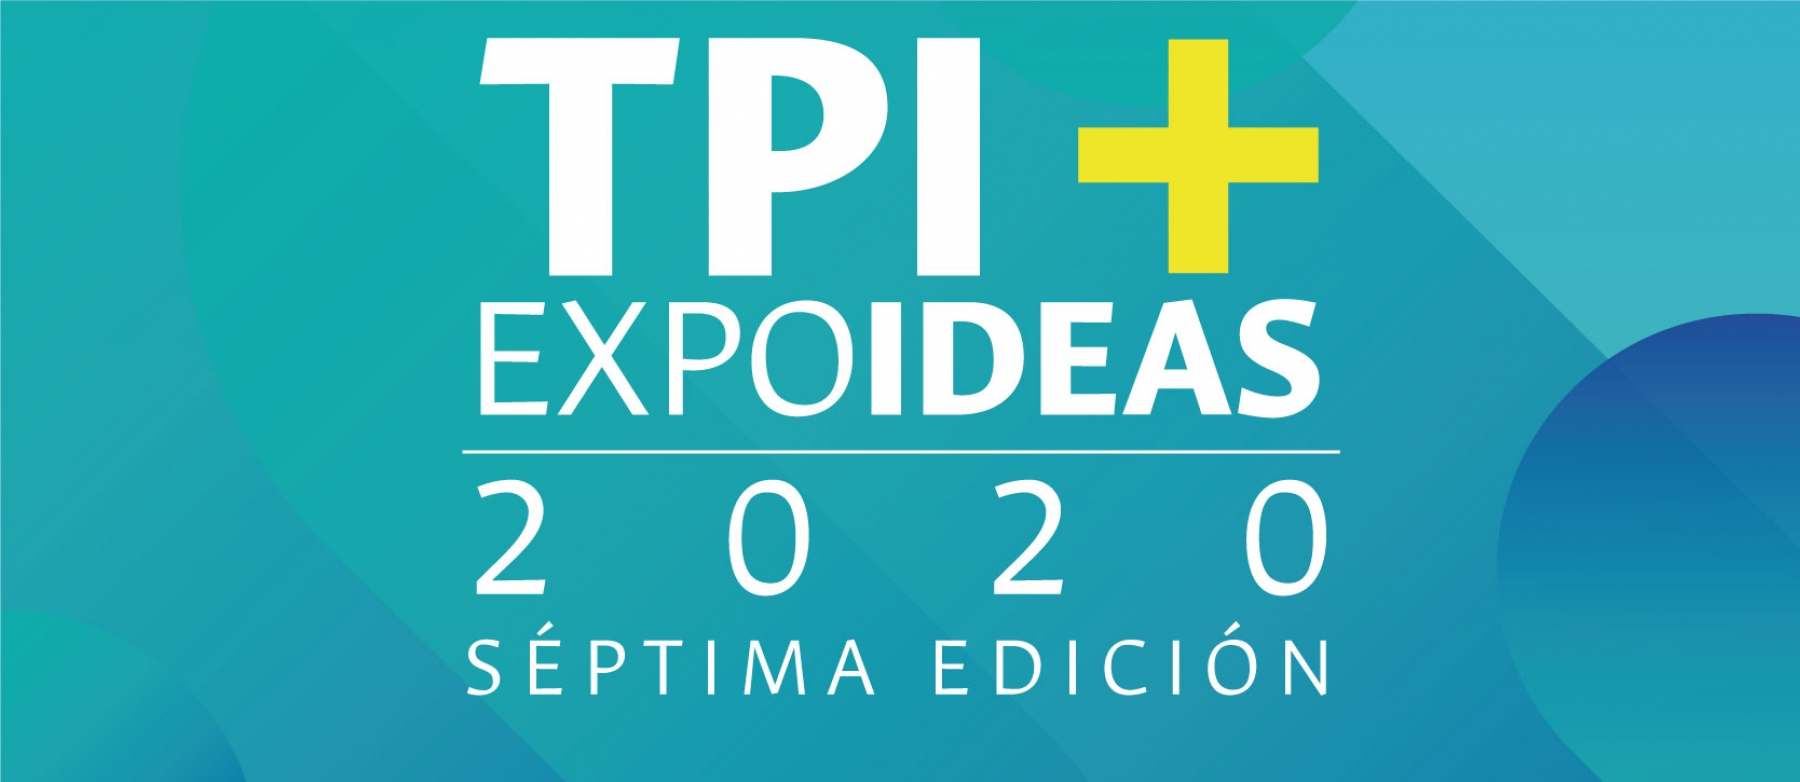 La séptima edición de TPI+Expoideas 2020 se realizó de manera virtual con total éxito, registrando cifras históricas de visitantes a la sala de proyectos